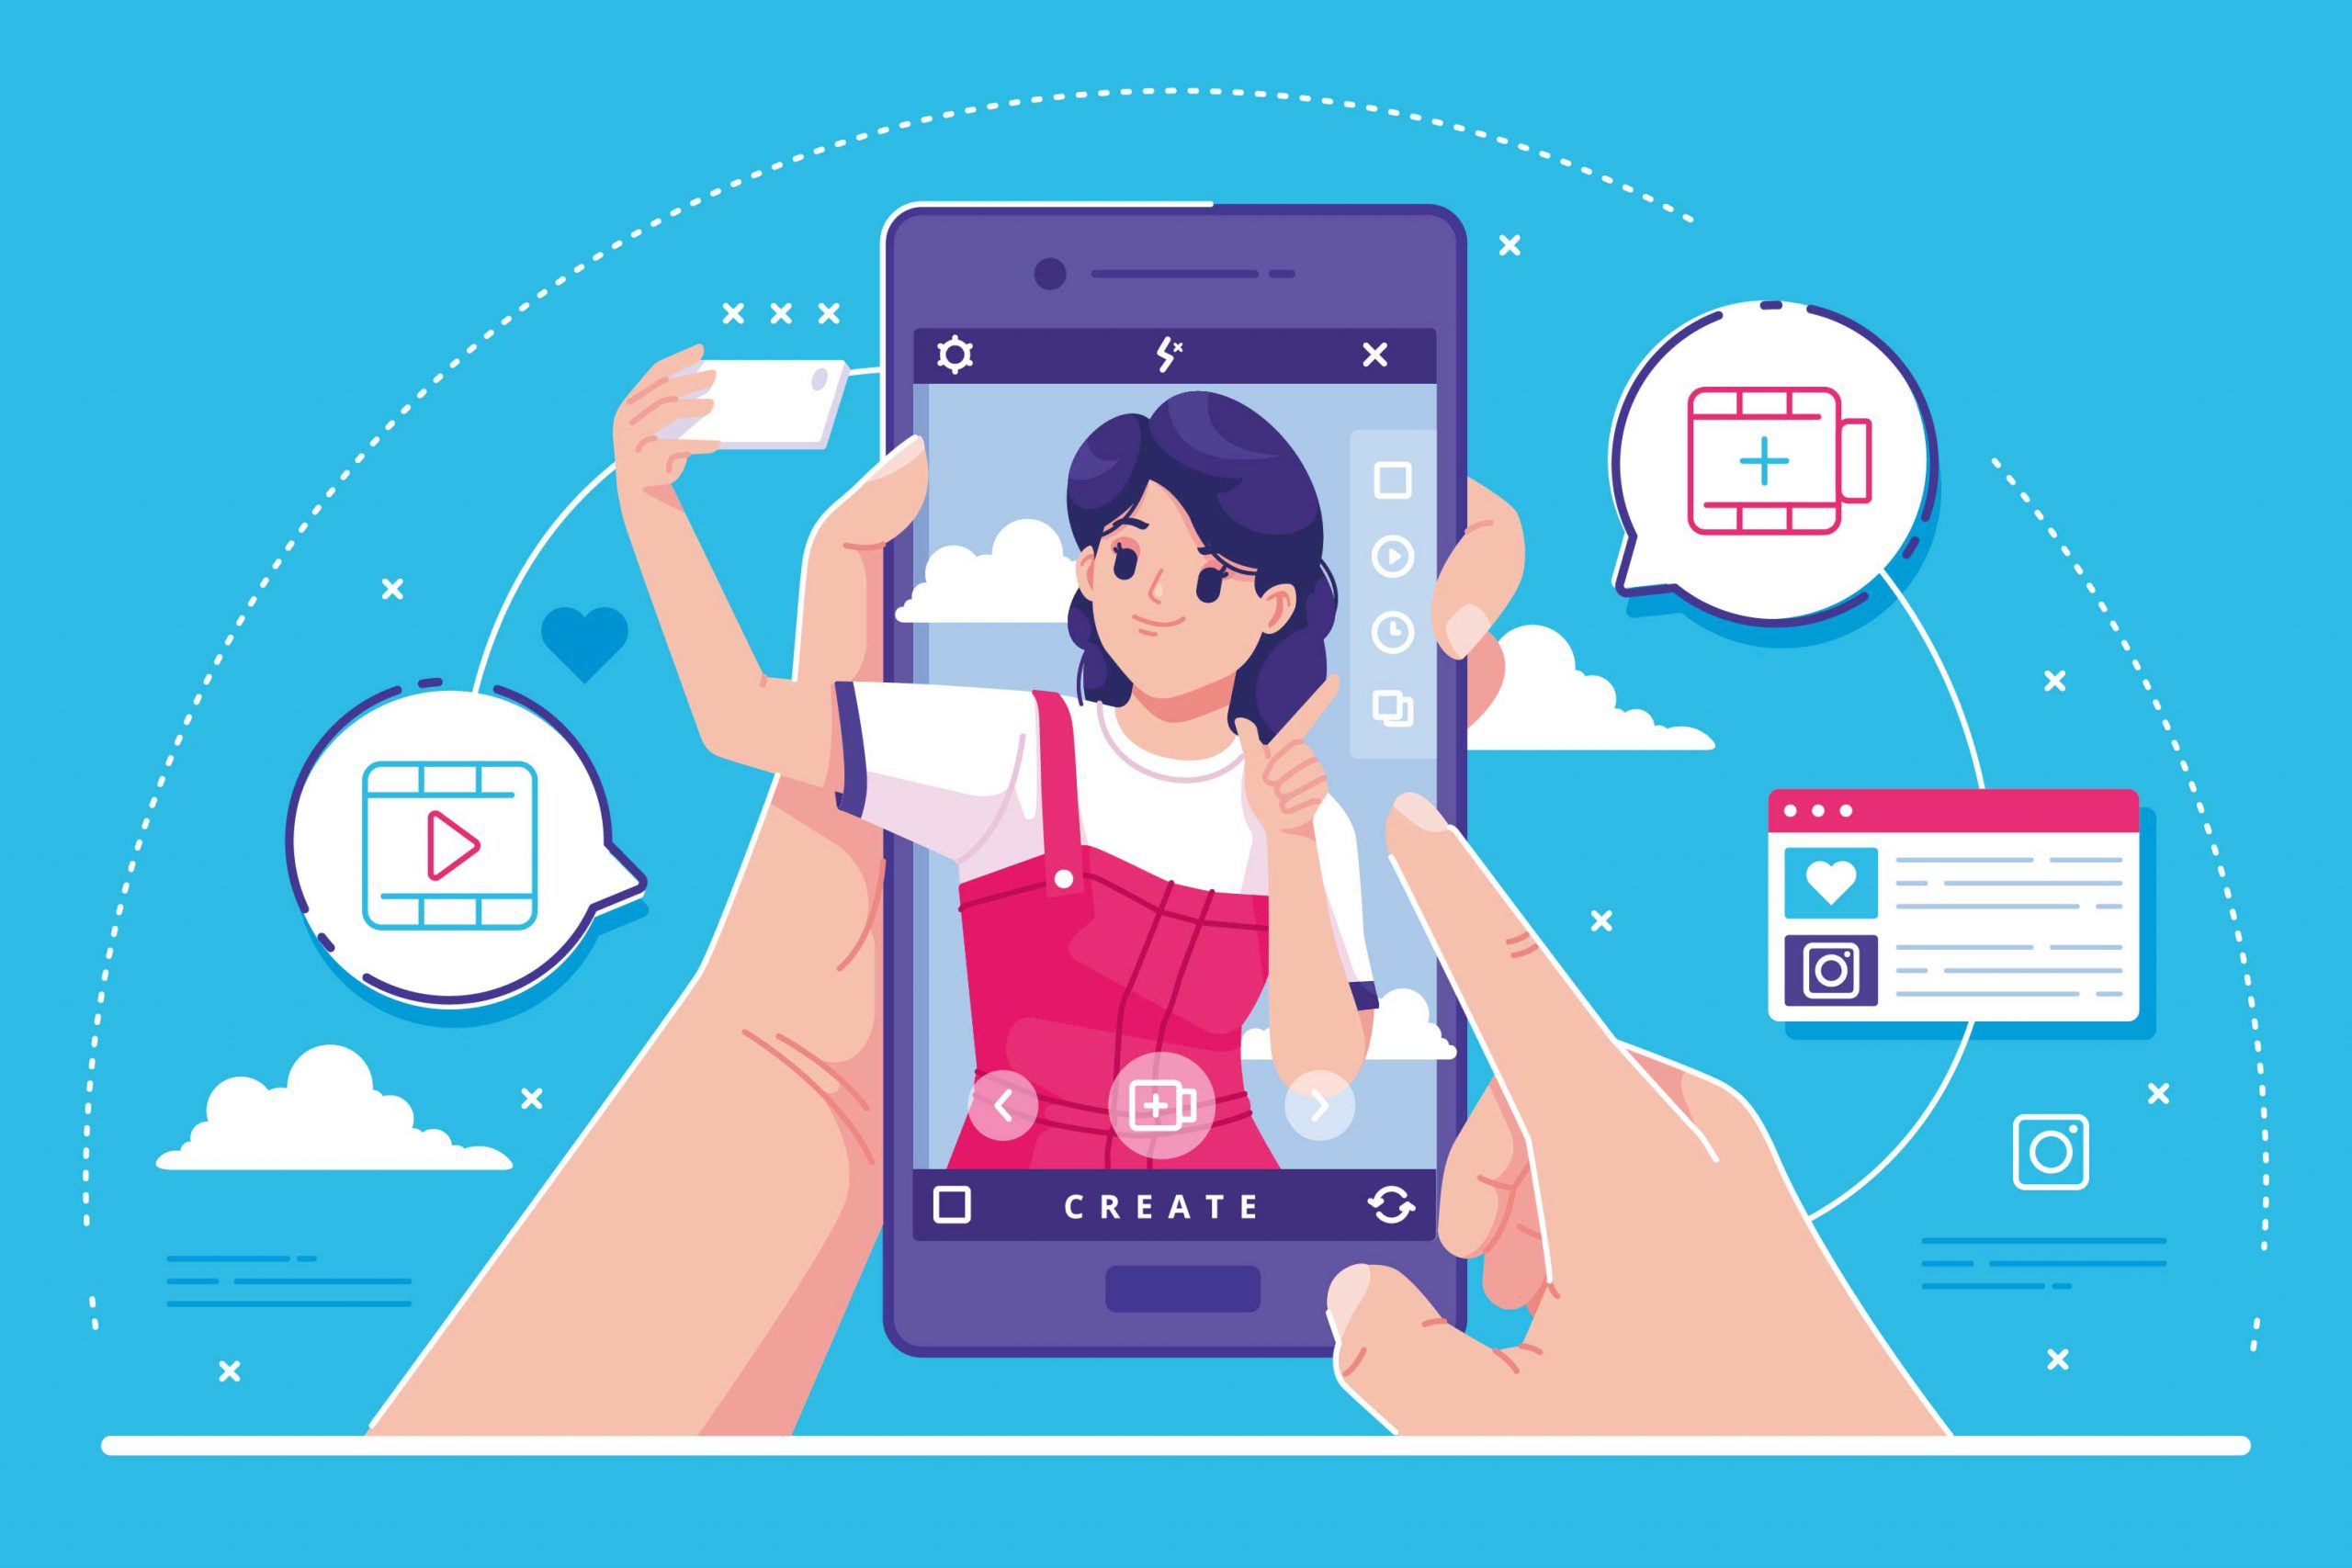 Ilustração mostra uma menina de rosa sendo exibida na tela de um celular fazendo um reels do instagram.